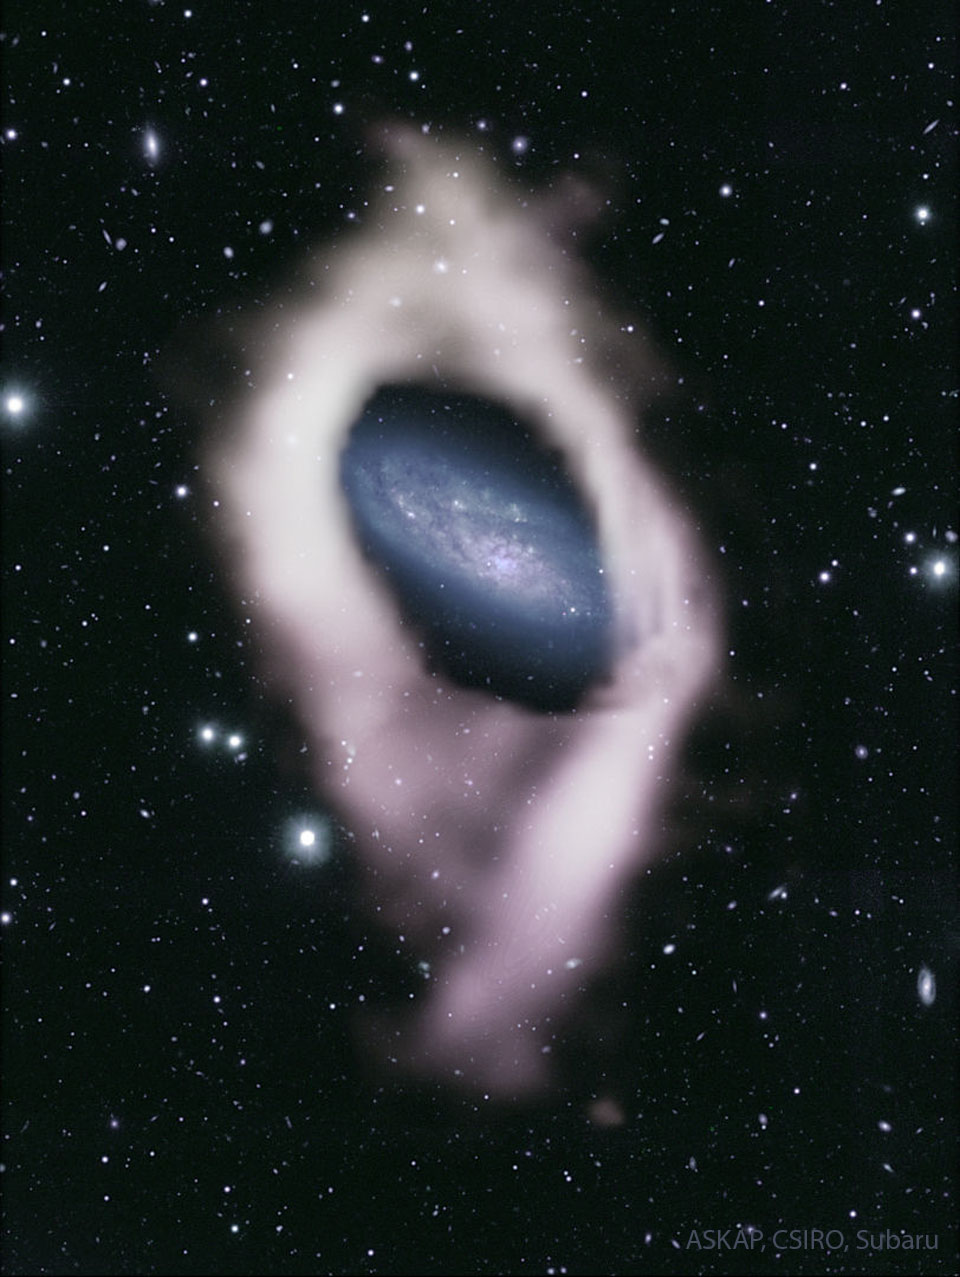 在图像中心的众多前景恒星中间可以看到一个带有蓝色旋臂的星系。这个星系被发现是氢气的白色外壳所包围。有关更多详细信息，请参阅说明。